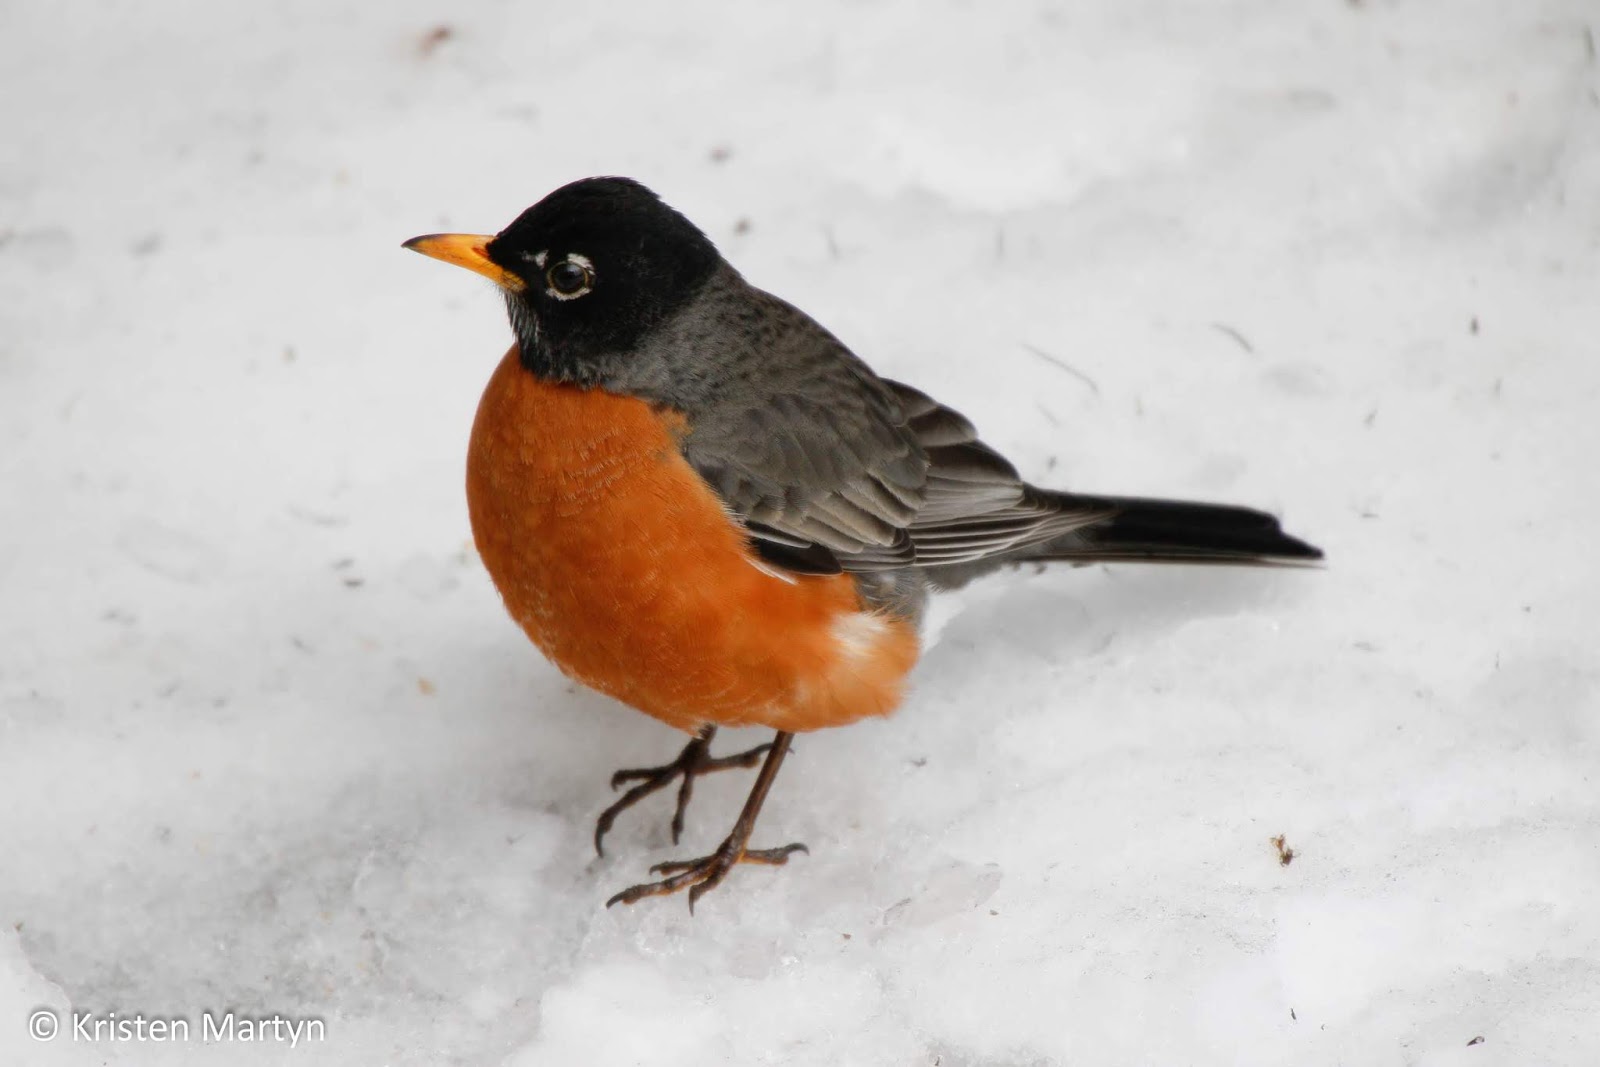 How Birds Survive in Winter Weather